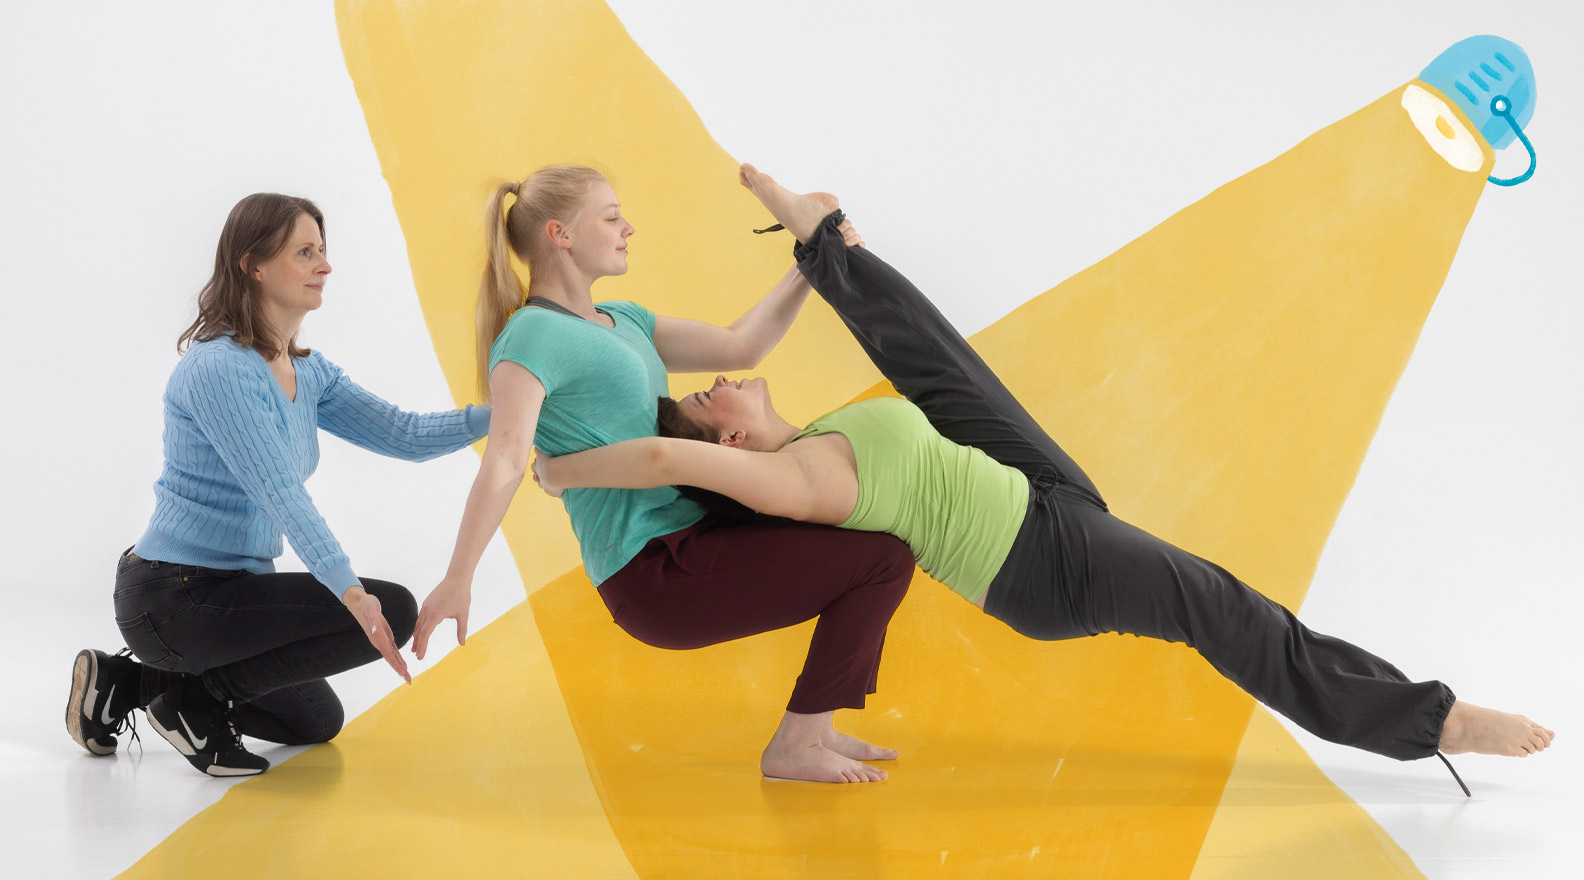 Kaksi nuorta naista harjoittelee akrobatiaa kolmannen naisen heitä avustaessa. Kuvaan on lisätty piirroskuvituksen muodossa ristiin heijastetut valokeilat.